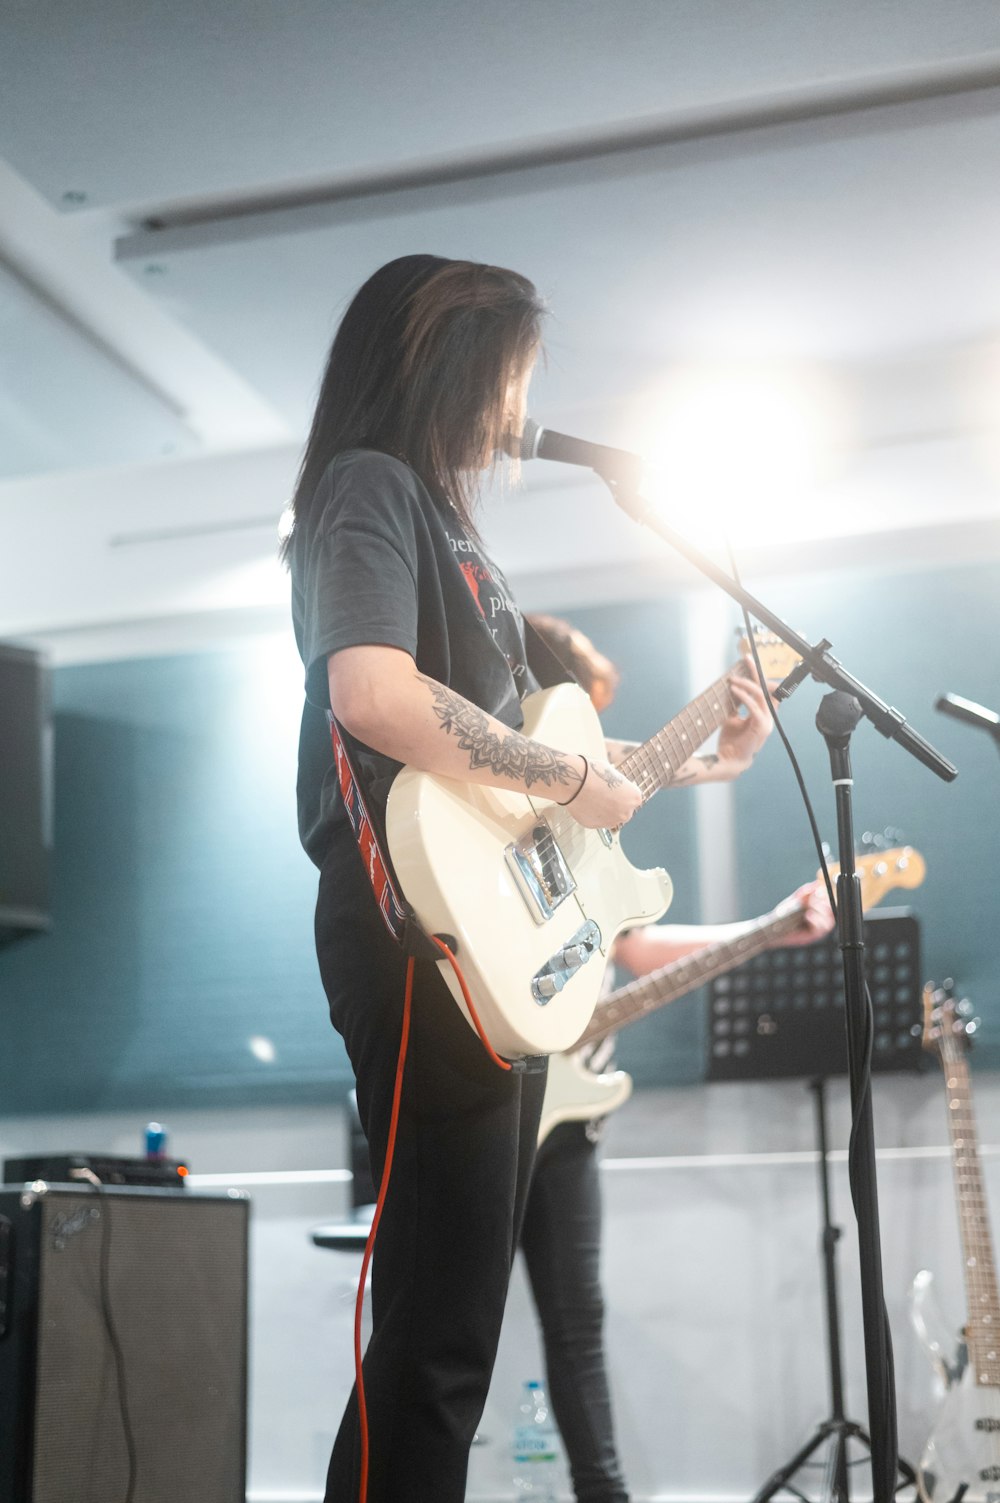 mulher na camiseta preta que joga a guitarra elétrica branca e marrom stratocaster